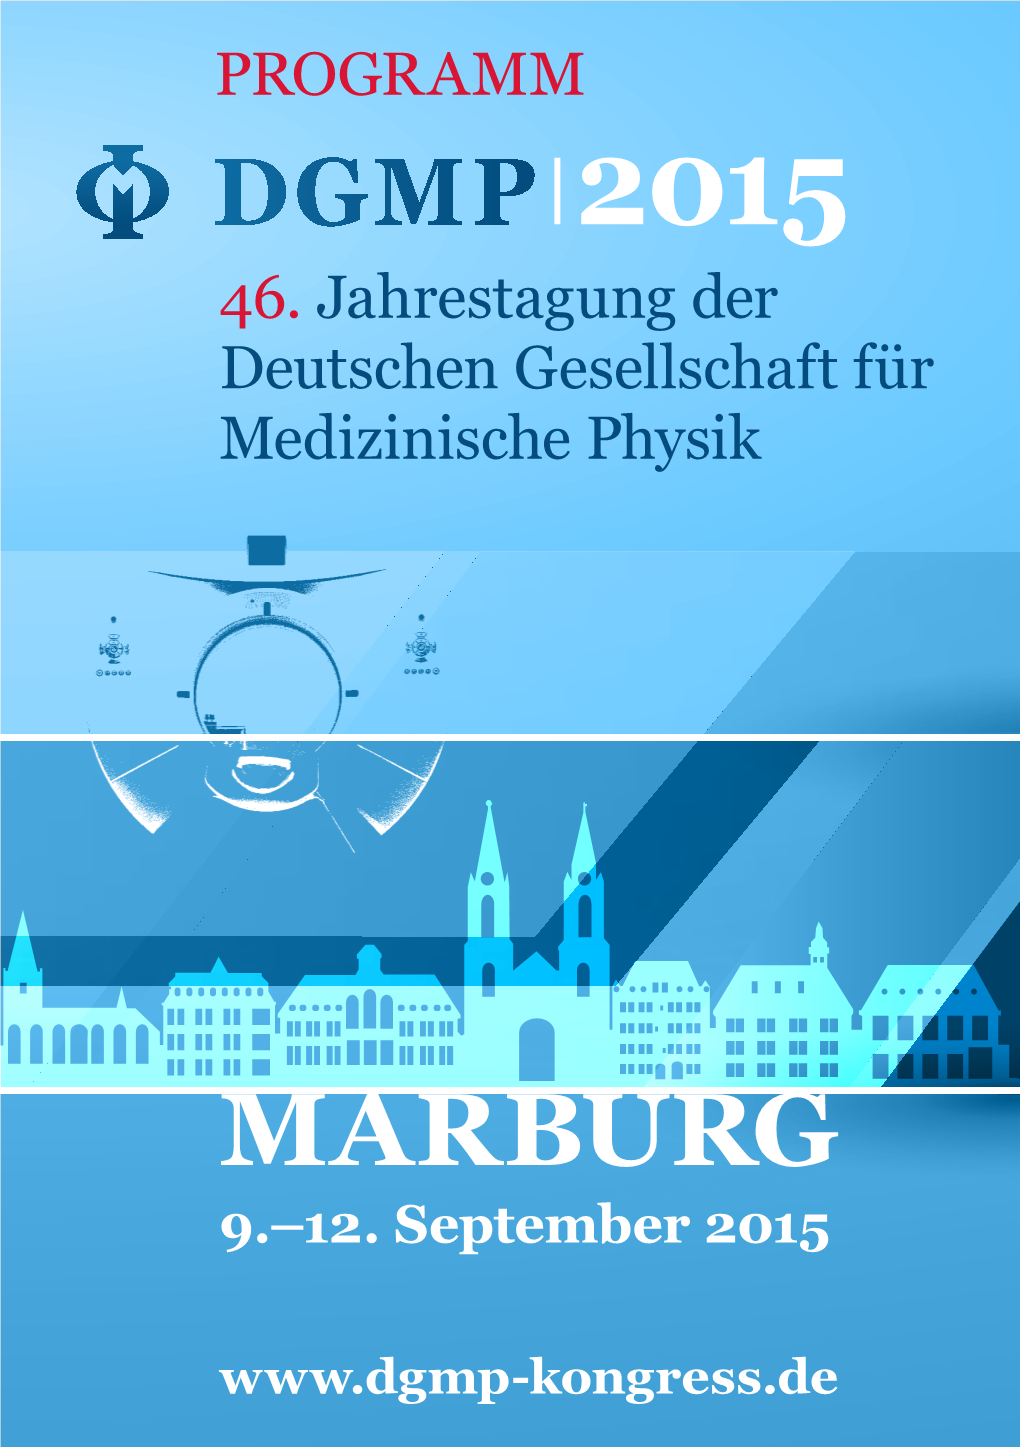 Marburg 9.–12